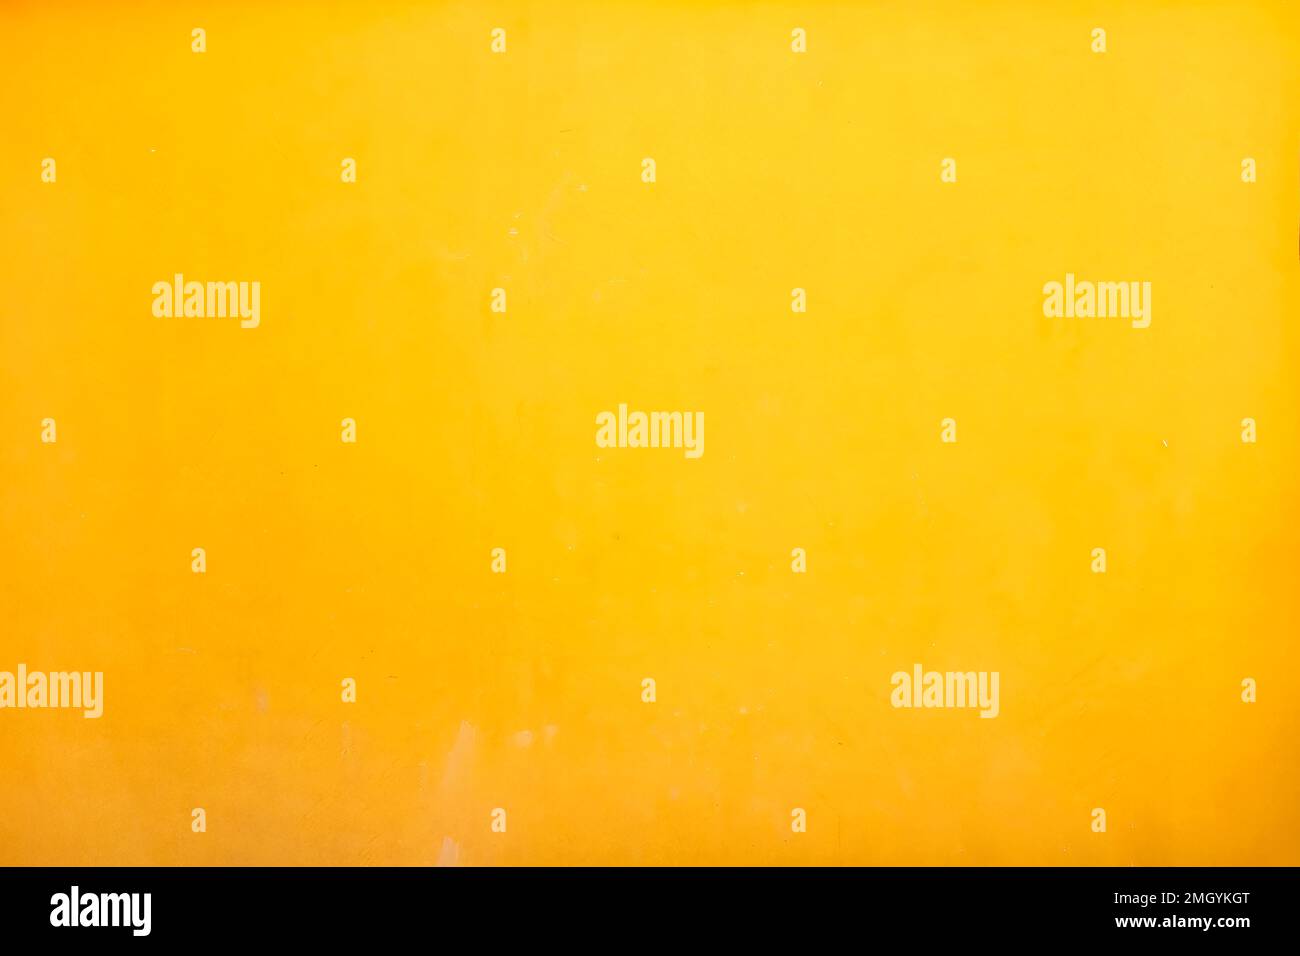 Ein einfaches Hintergrund- oder Tischbild. Das fotografierte Bild hat eine leicht gleichmäßige Textur und ist gelb-orange gefärbt Stockfoto